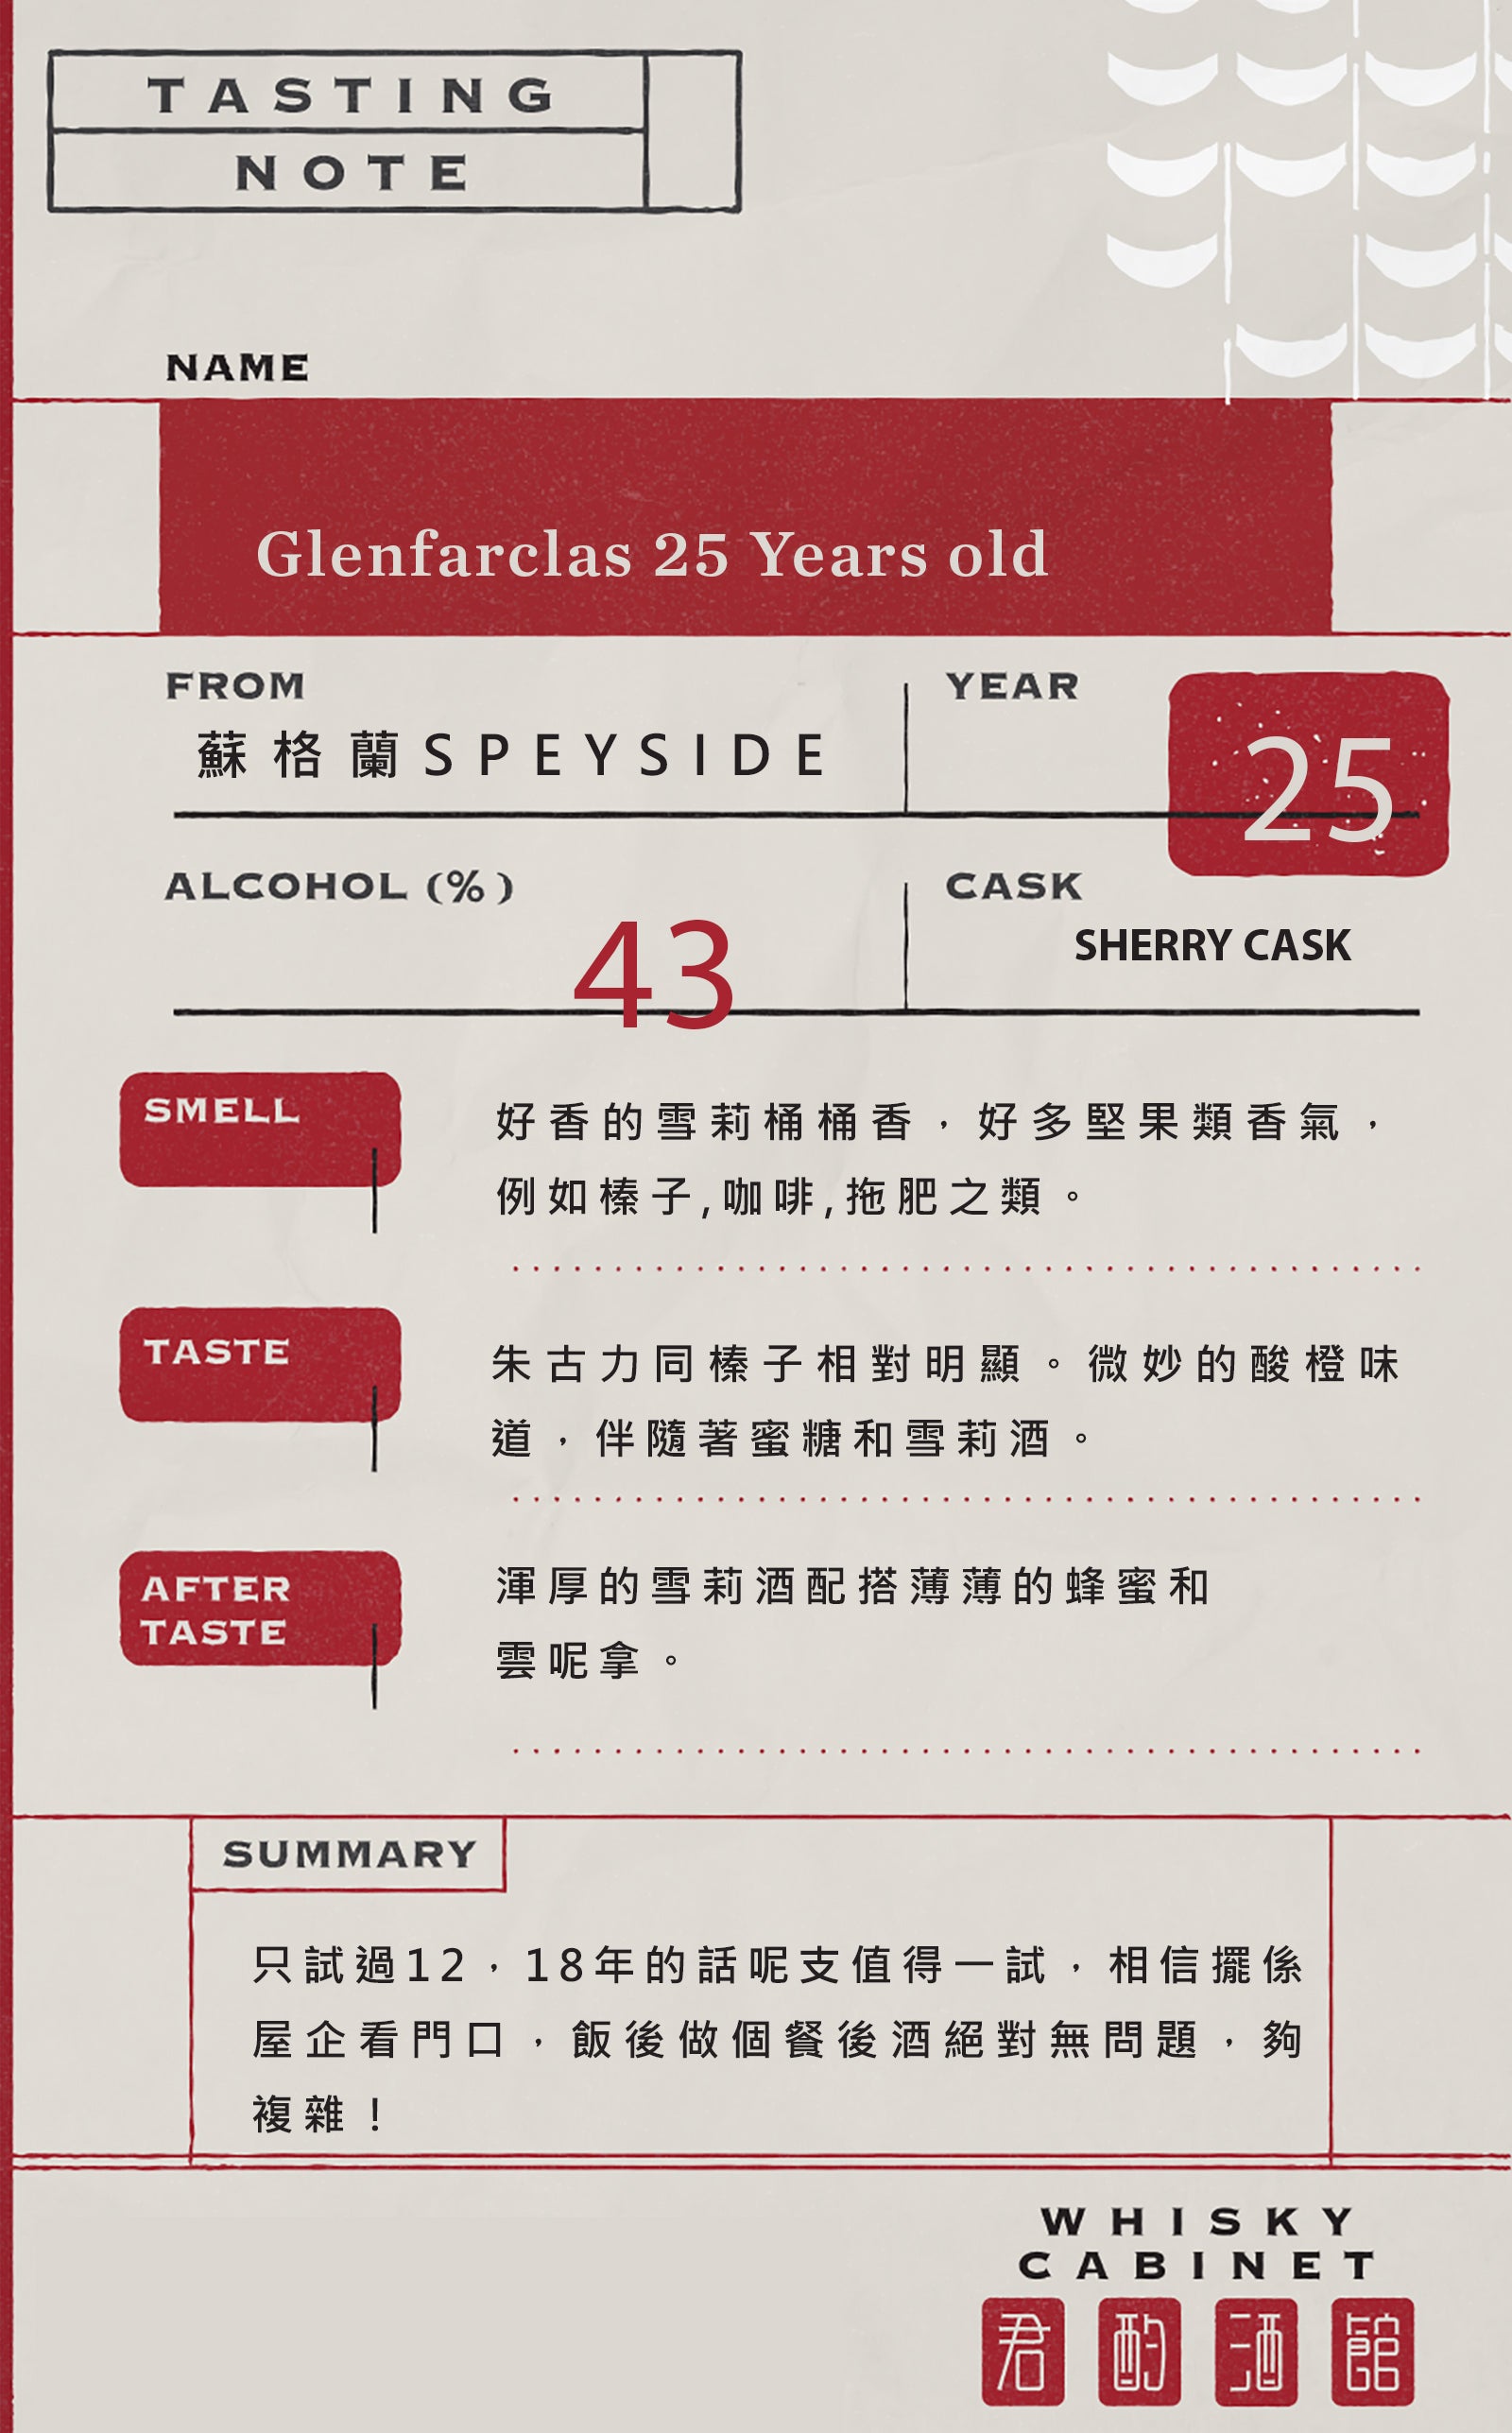 Glenfarclas 25 Years Old